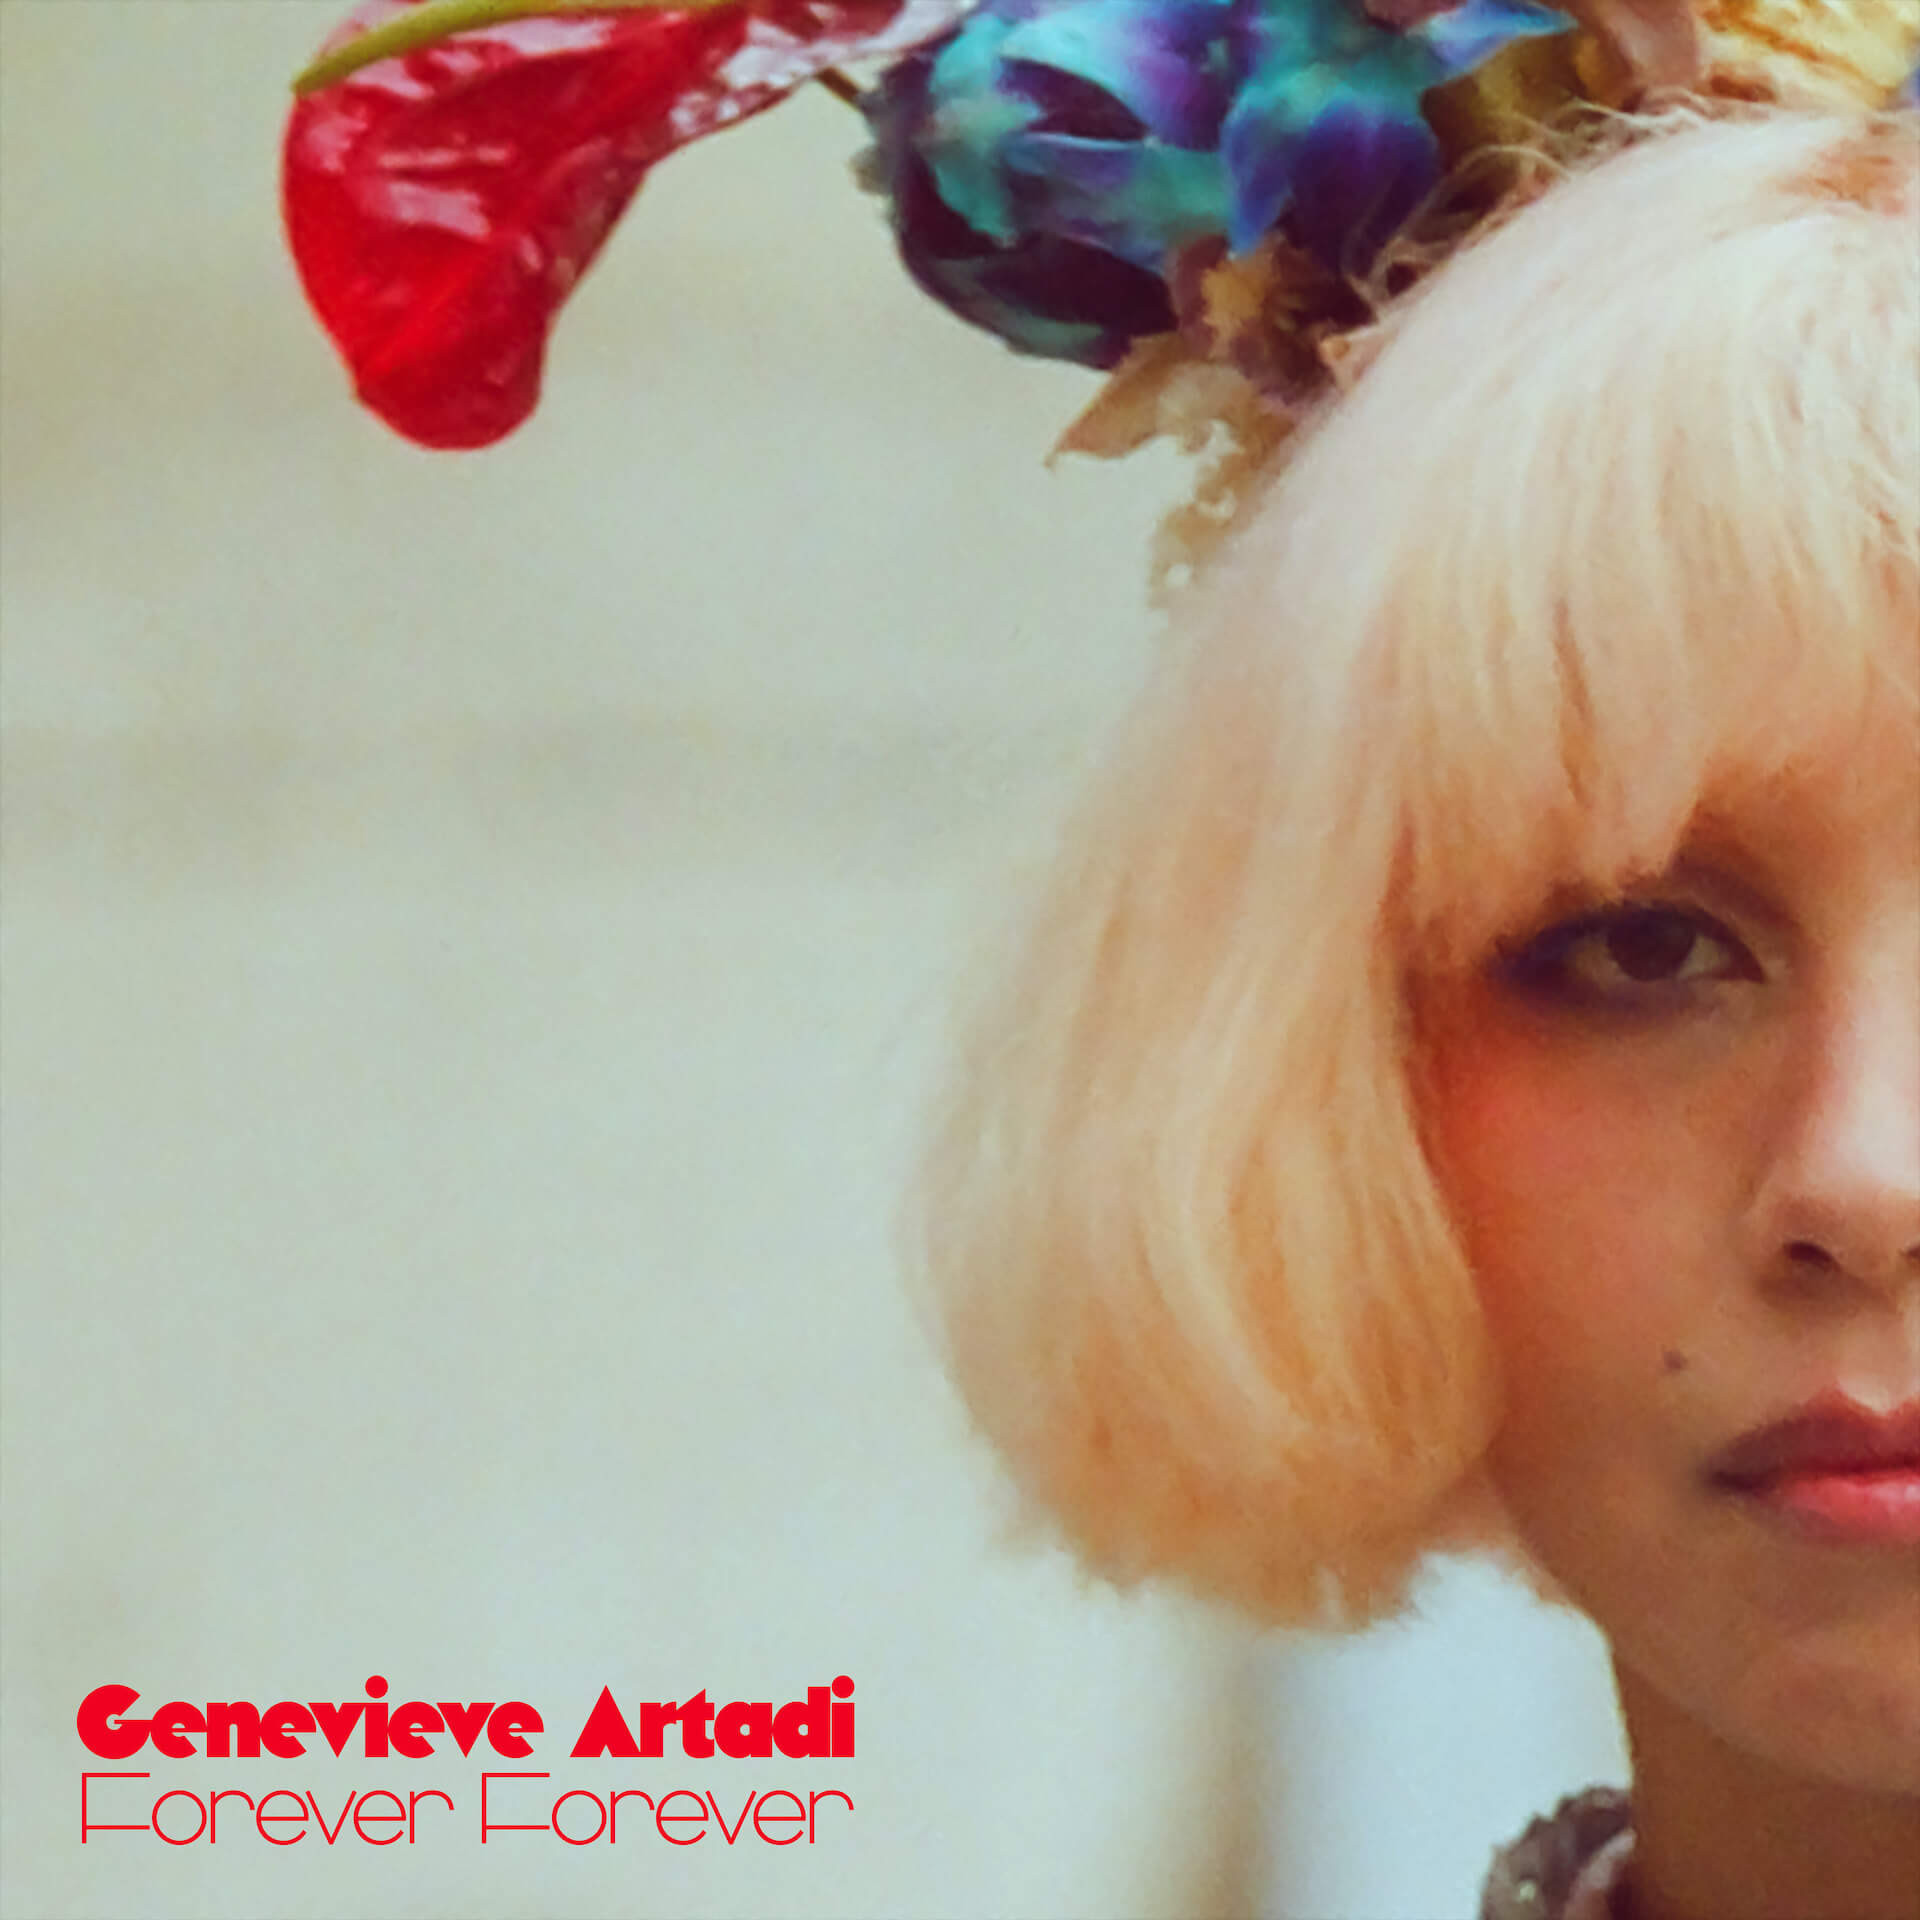 ジェネヴィーヴ・アルターディ、ルイス・コールやサム・ゲンデルら参加のアルバム『Forever Forever』を〈Brainfeeder〉よりリリース music230120-genevieve-artad4